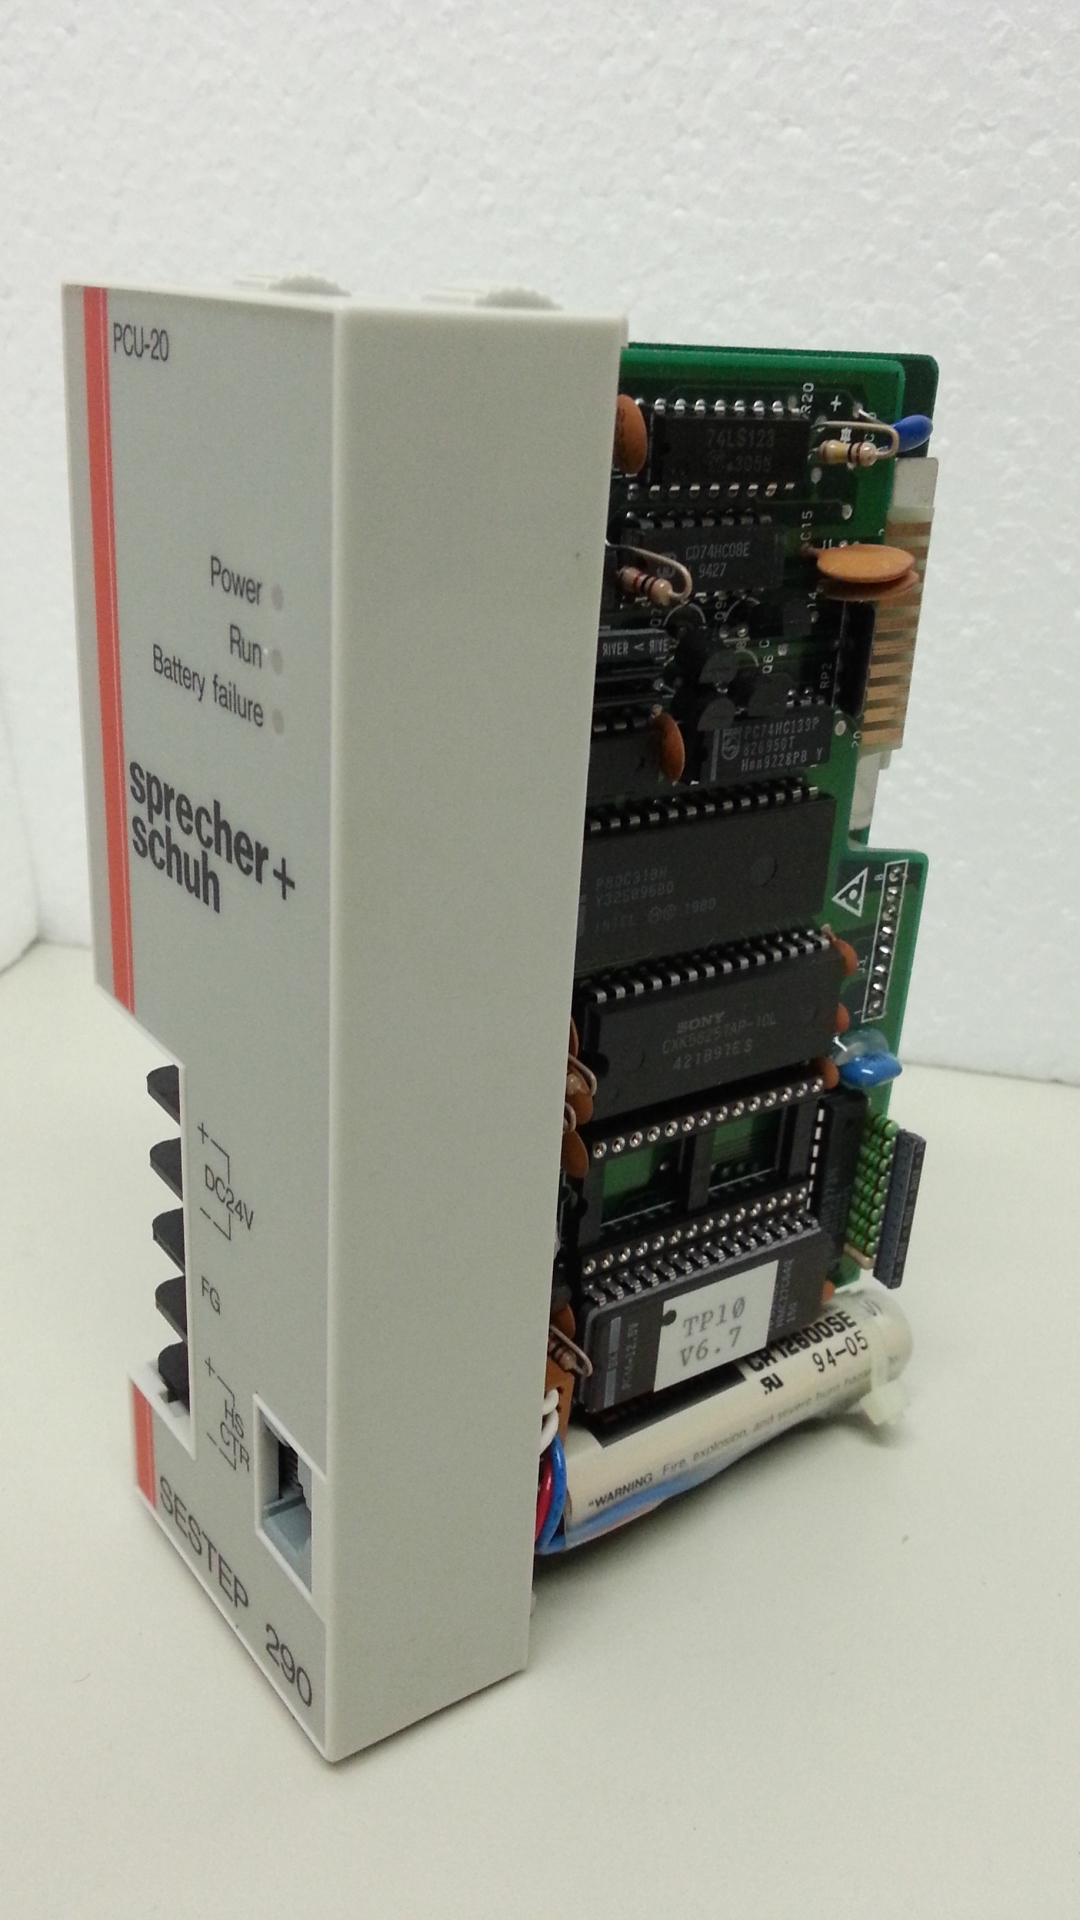 PCU-20 CPU Sprecher+Schuh sestep 290 new in Box